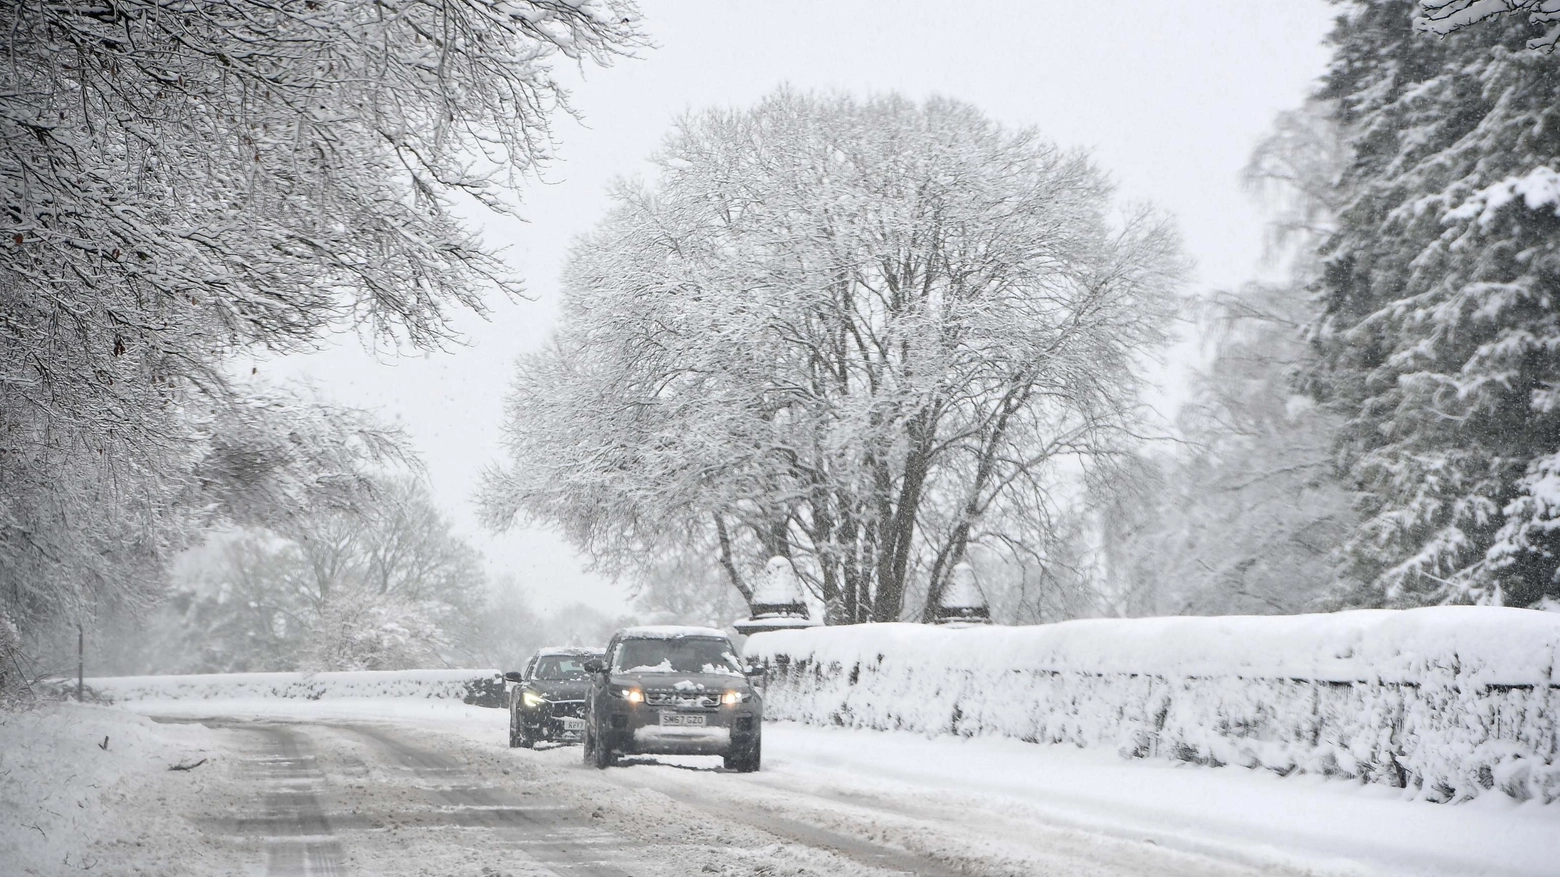 Neve e vento: un problema per chi va sulle strade, specie se in bici